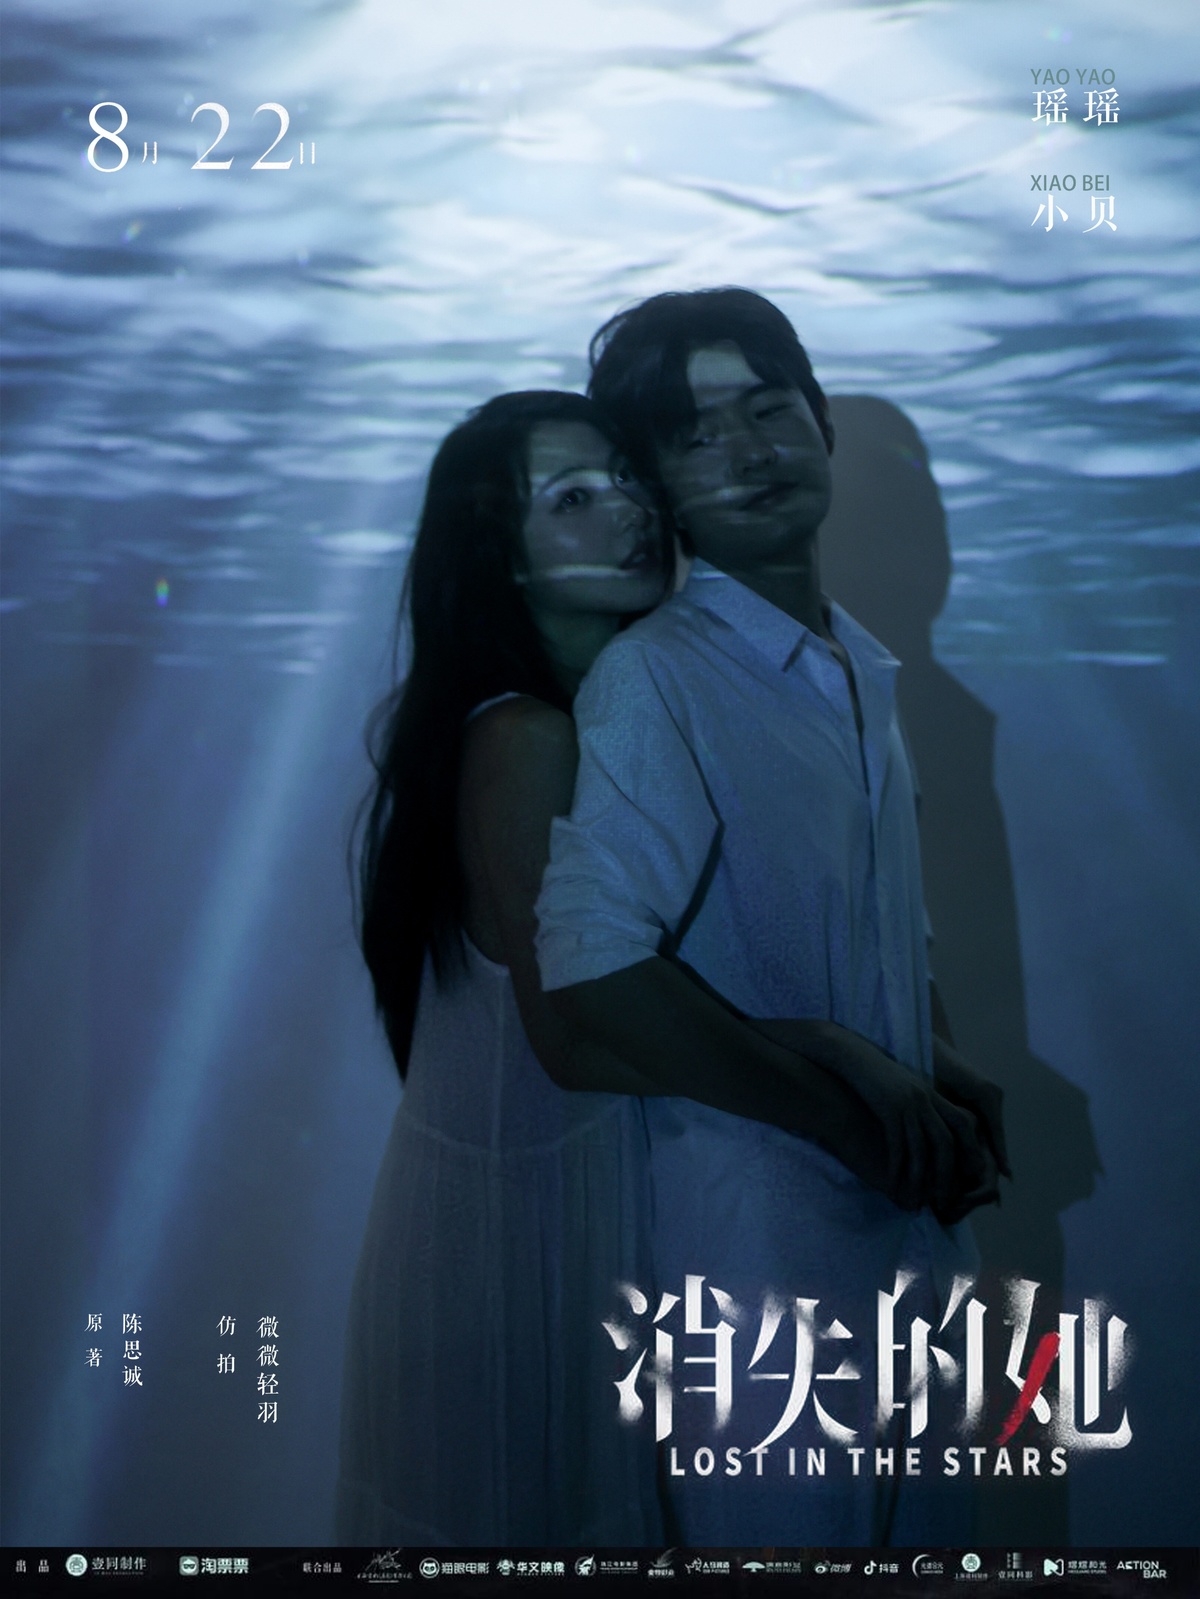 电影《水下》的巨型电影海报图像